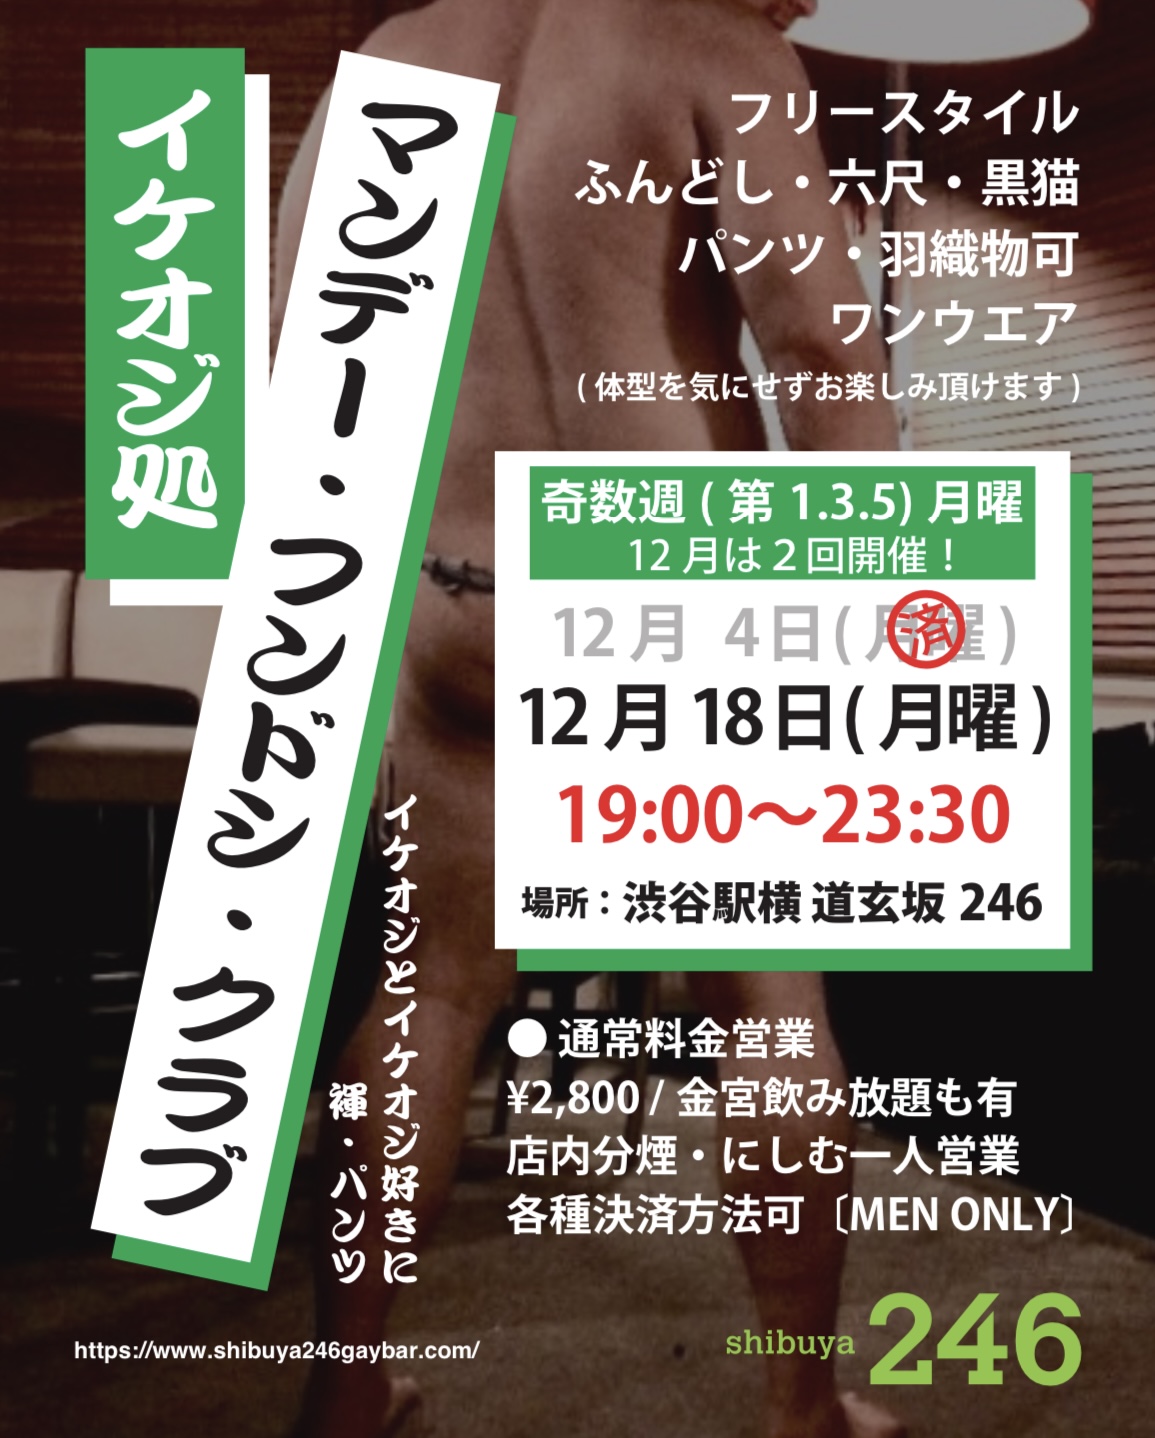 渋谷駅横２４６で月曜に褌・パンツ イベント「イケオジ処 マンデー・フンドシ・クラブ」イケオジ好きとイケオジに